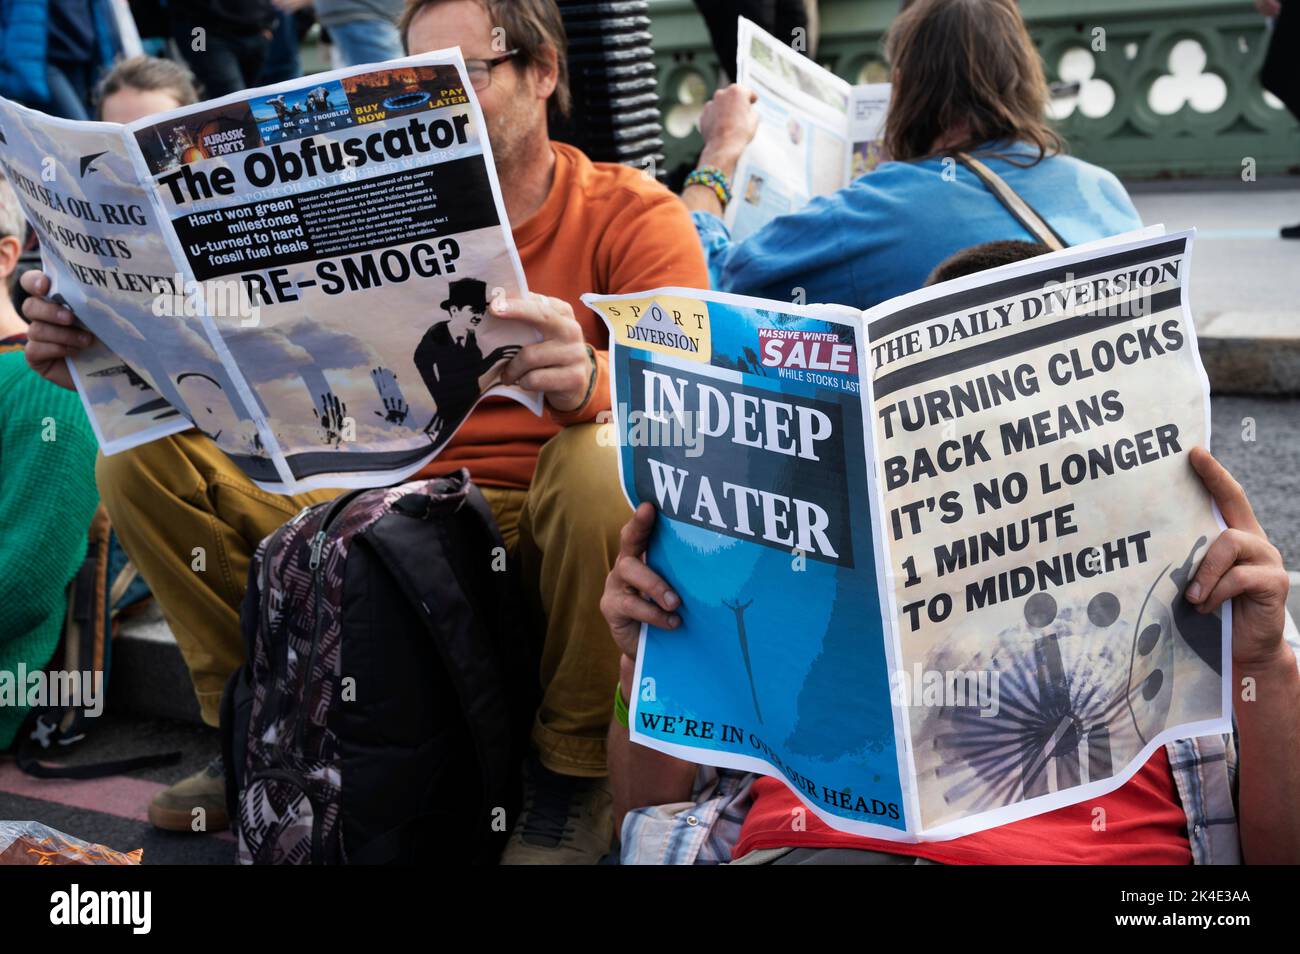 Londres. La gente protesta contra la industria petrolera y la crisis del costo de vida. Foto de stock